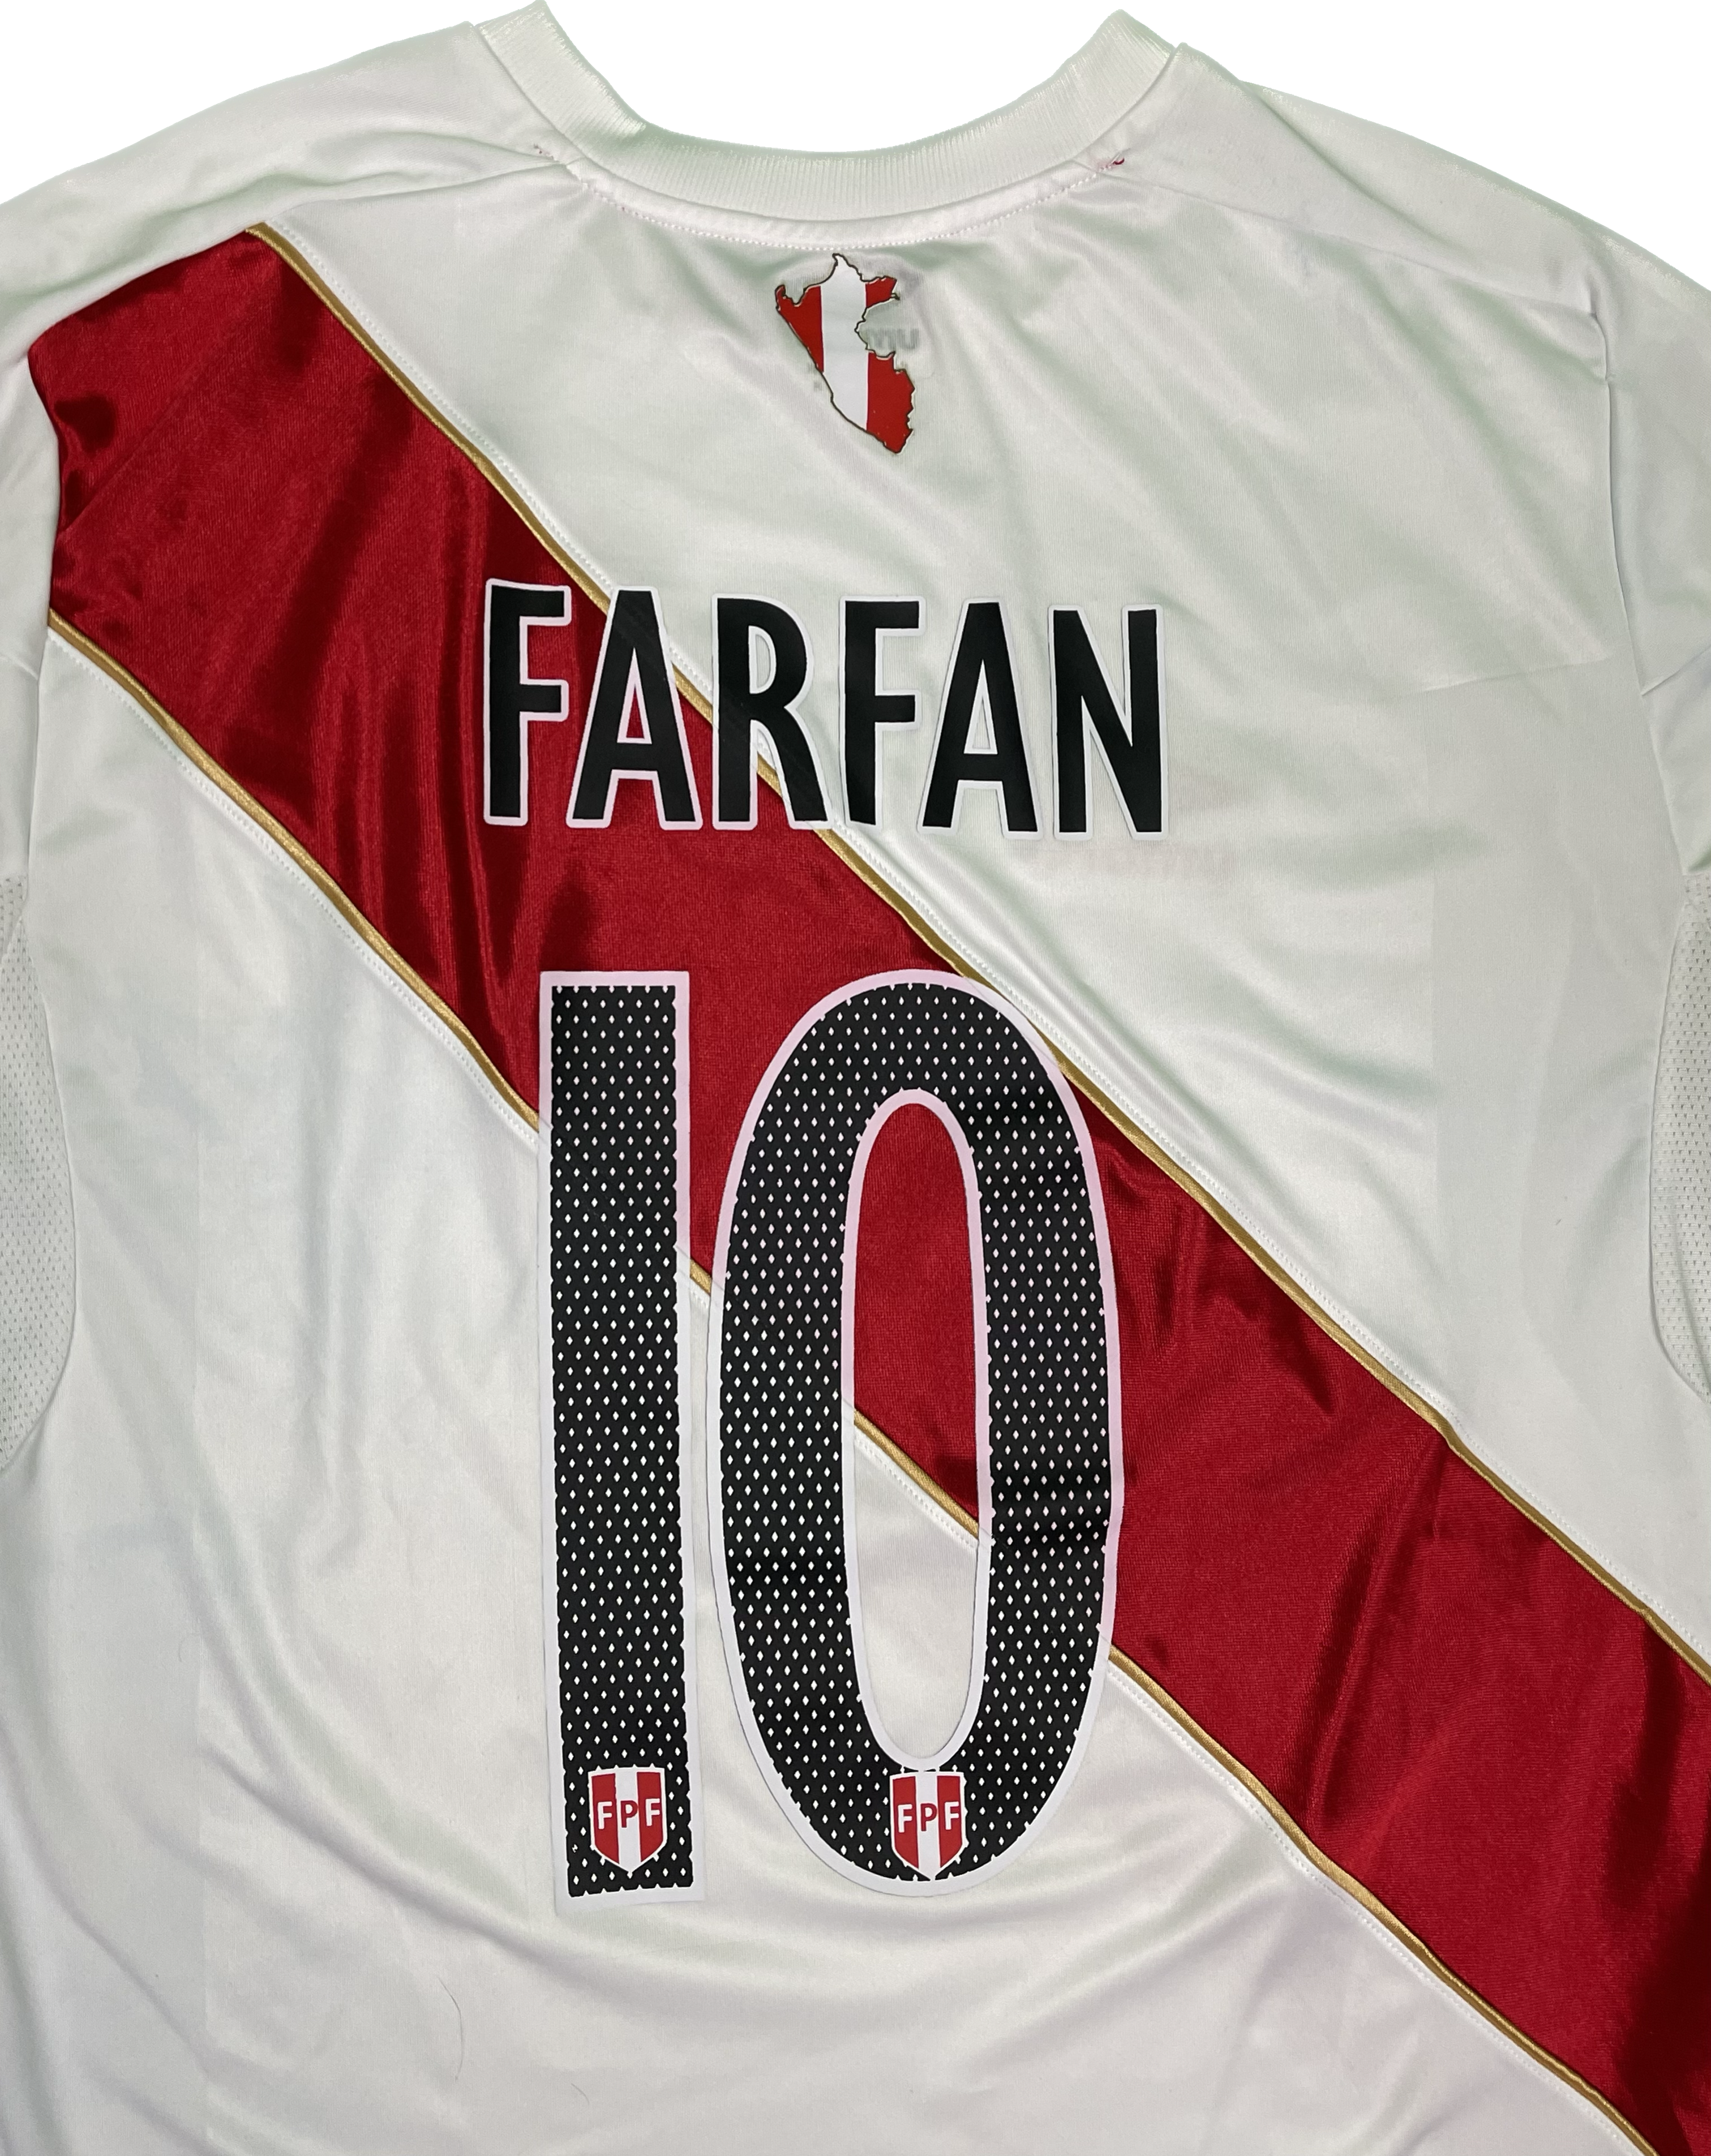 Farfan Peru World Cup 2018 Soccer Jersey